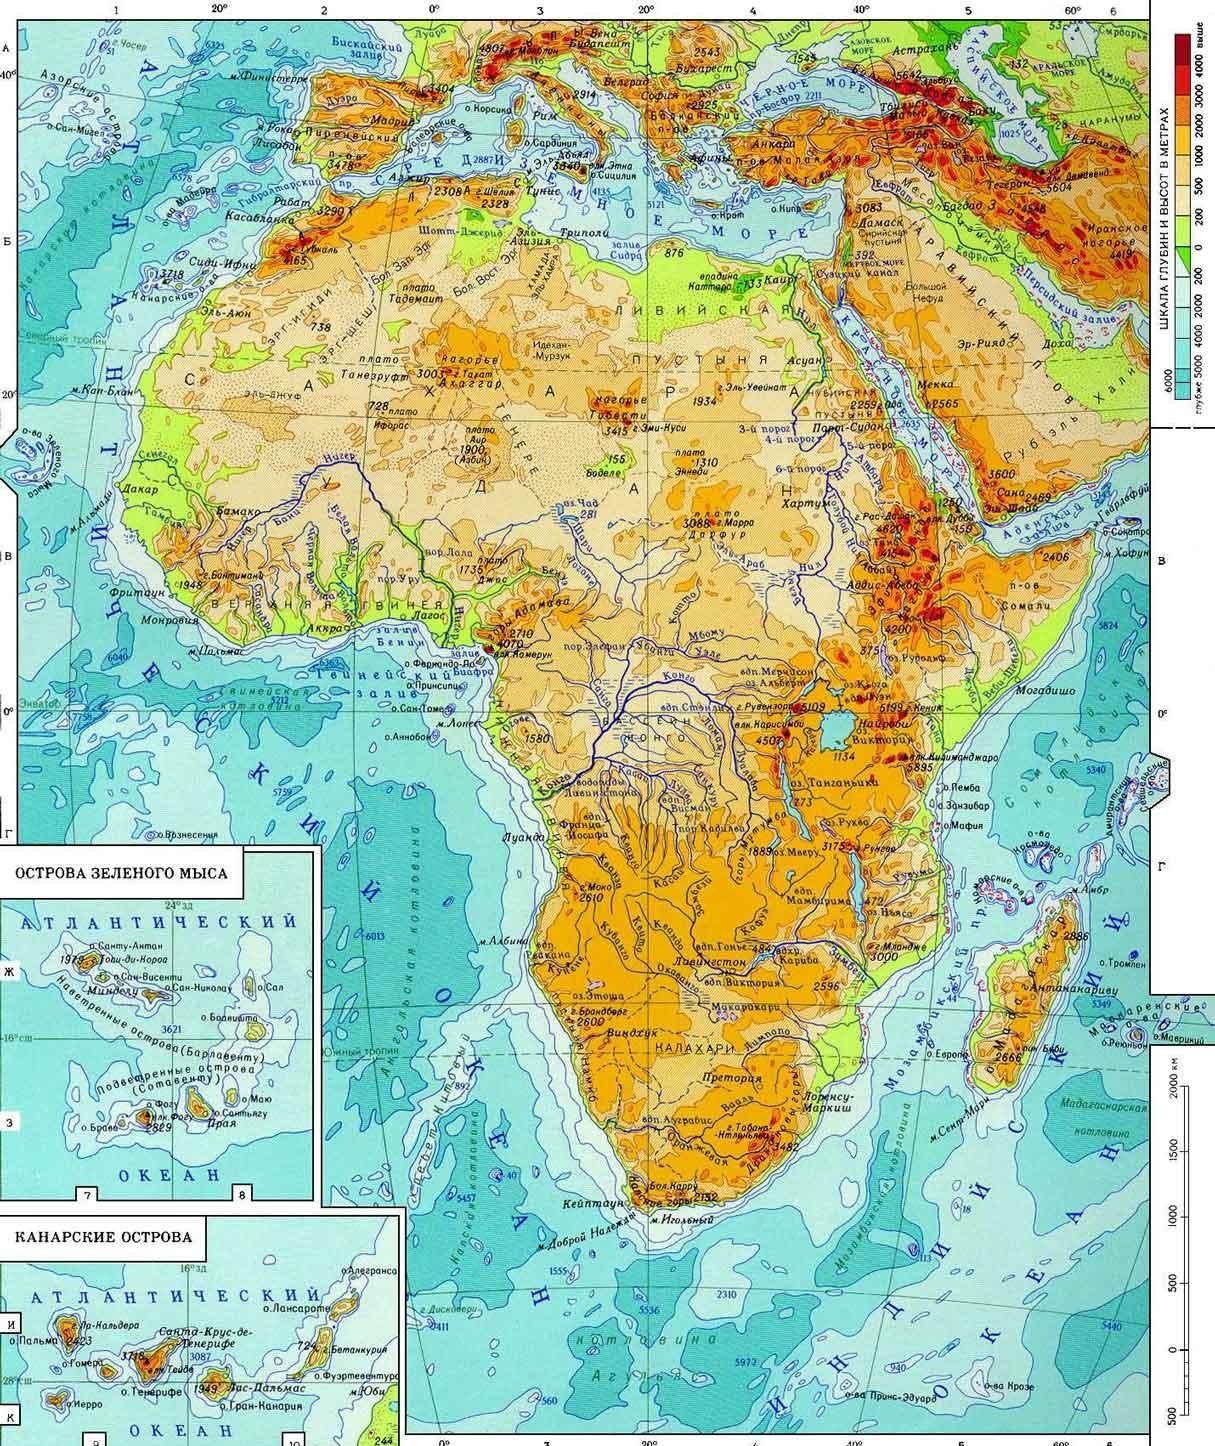 Африка является, пожалуй, последней неизведанной территорией